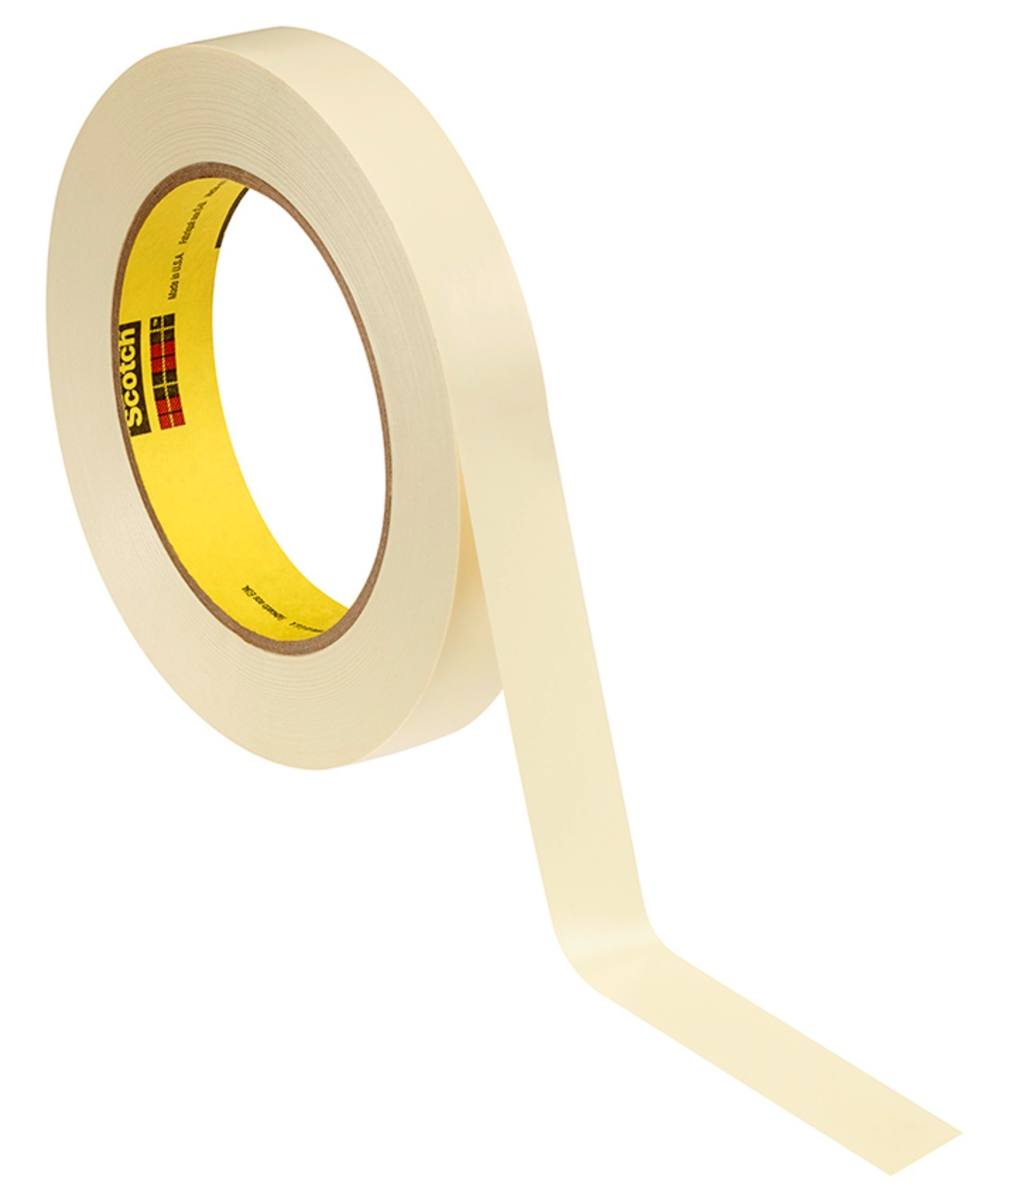 3M Galvanikklebeband Weich-PVC 470, gelb, 15 mm x 33 m, 0,18 mm